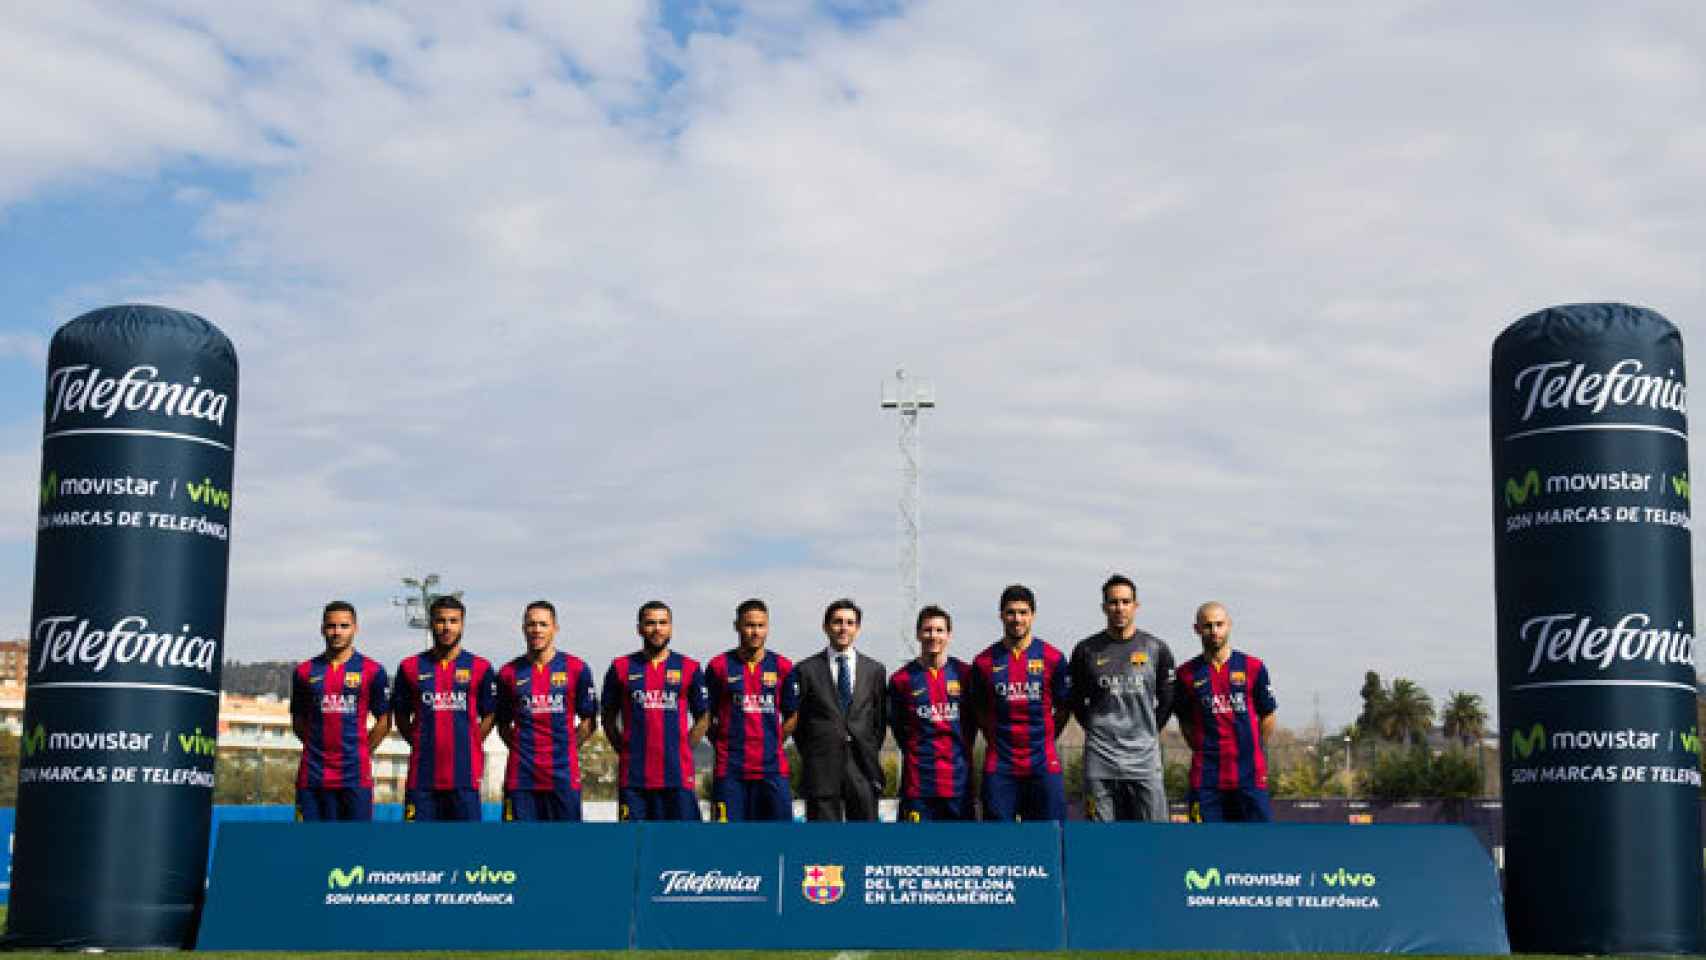 El FC Barcelona posando junto a los logos de Telefónica.